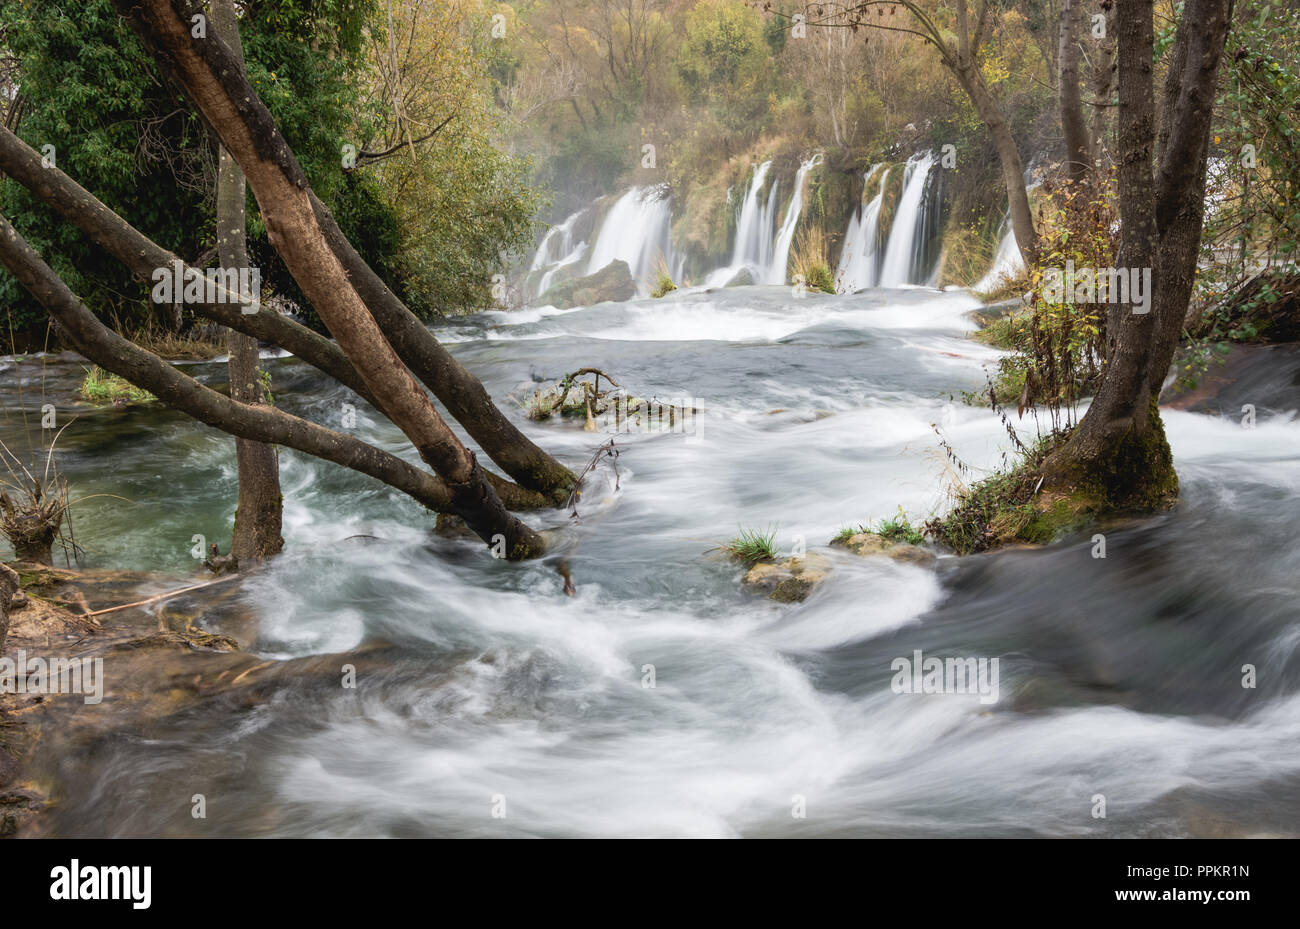 Kravice Falls at autumn, Bosnia and Herzegovina. Stock Photo